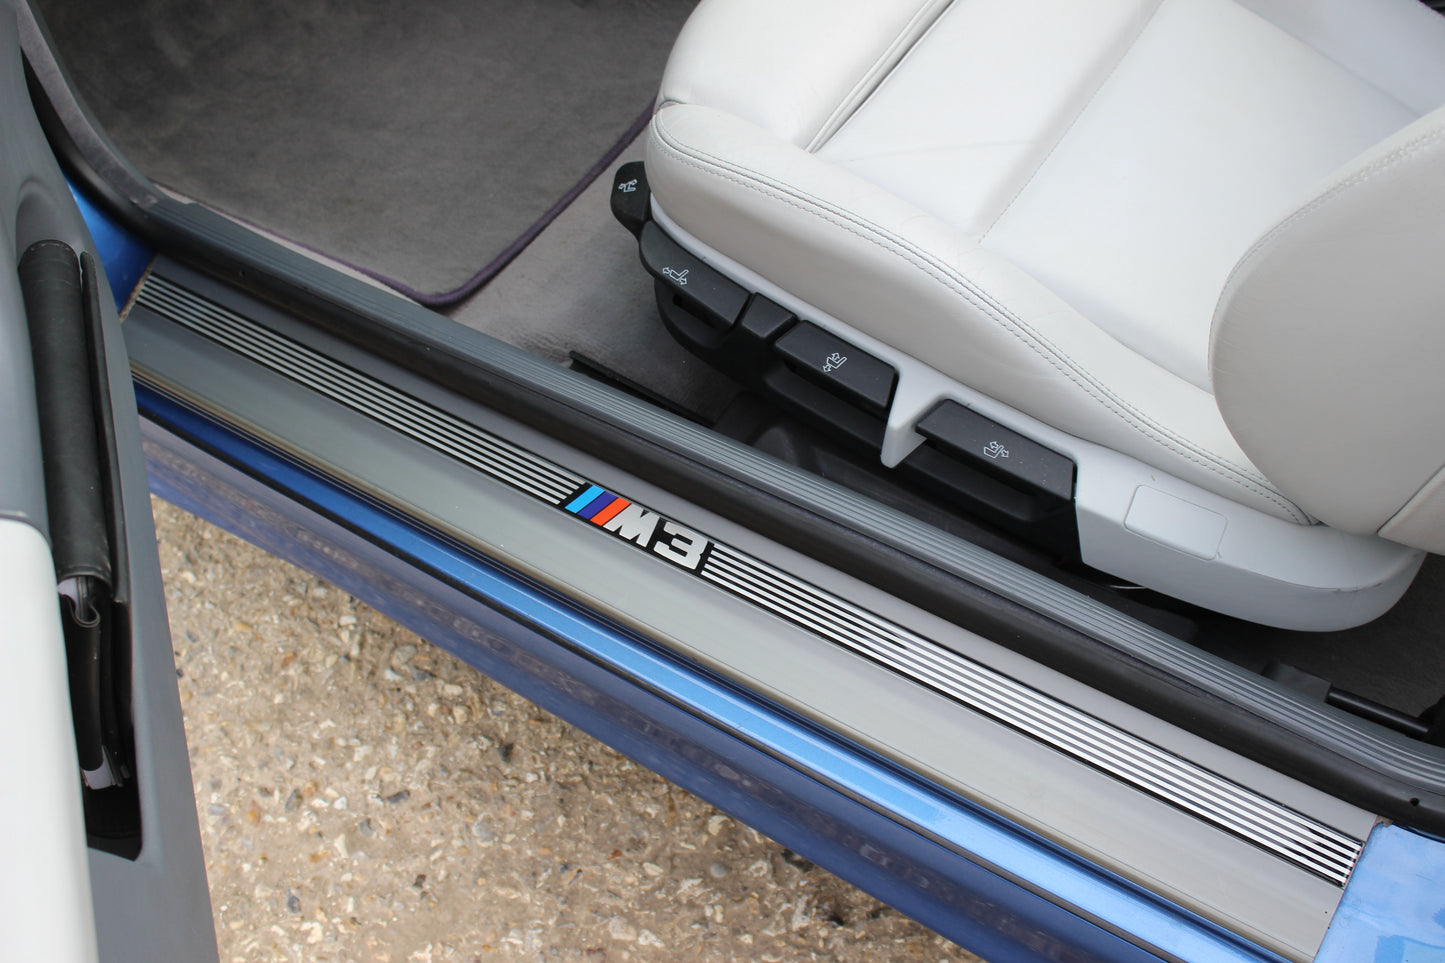 1998 BMW M3 Evo Convertible (E36)